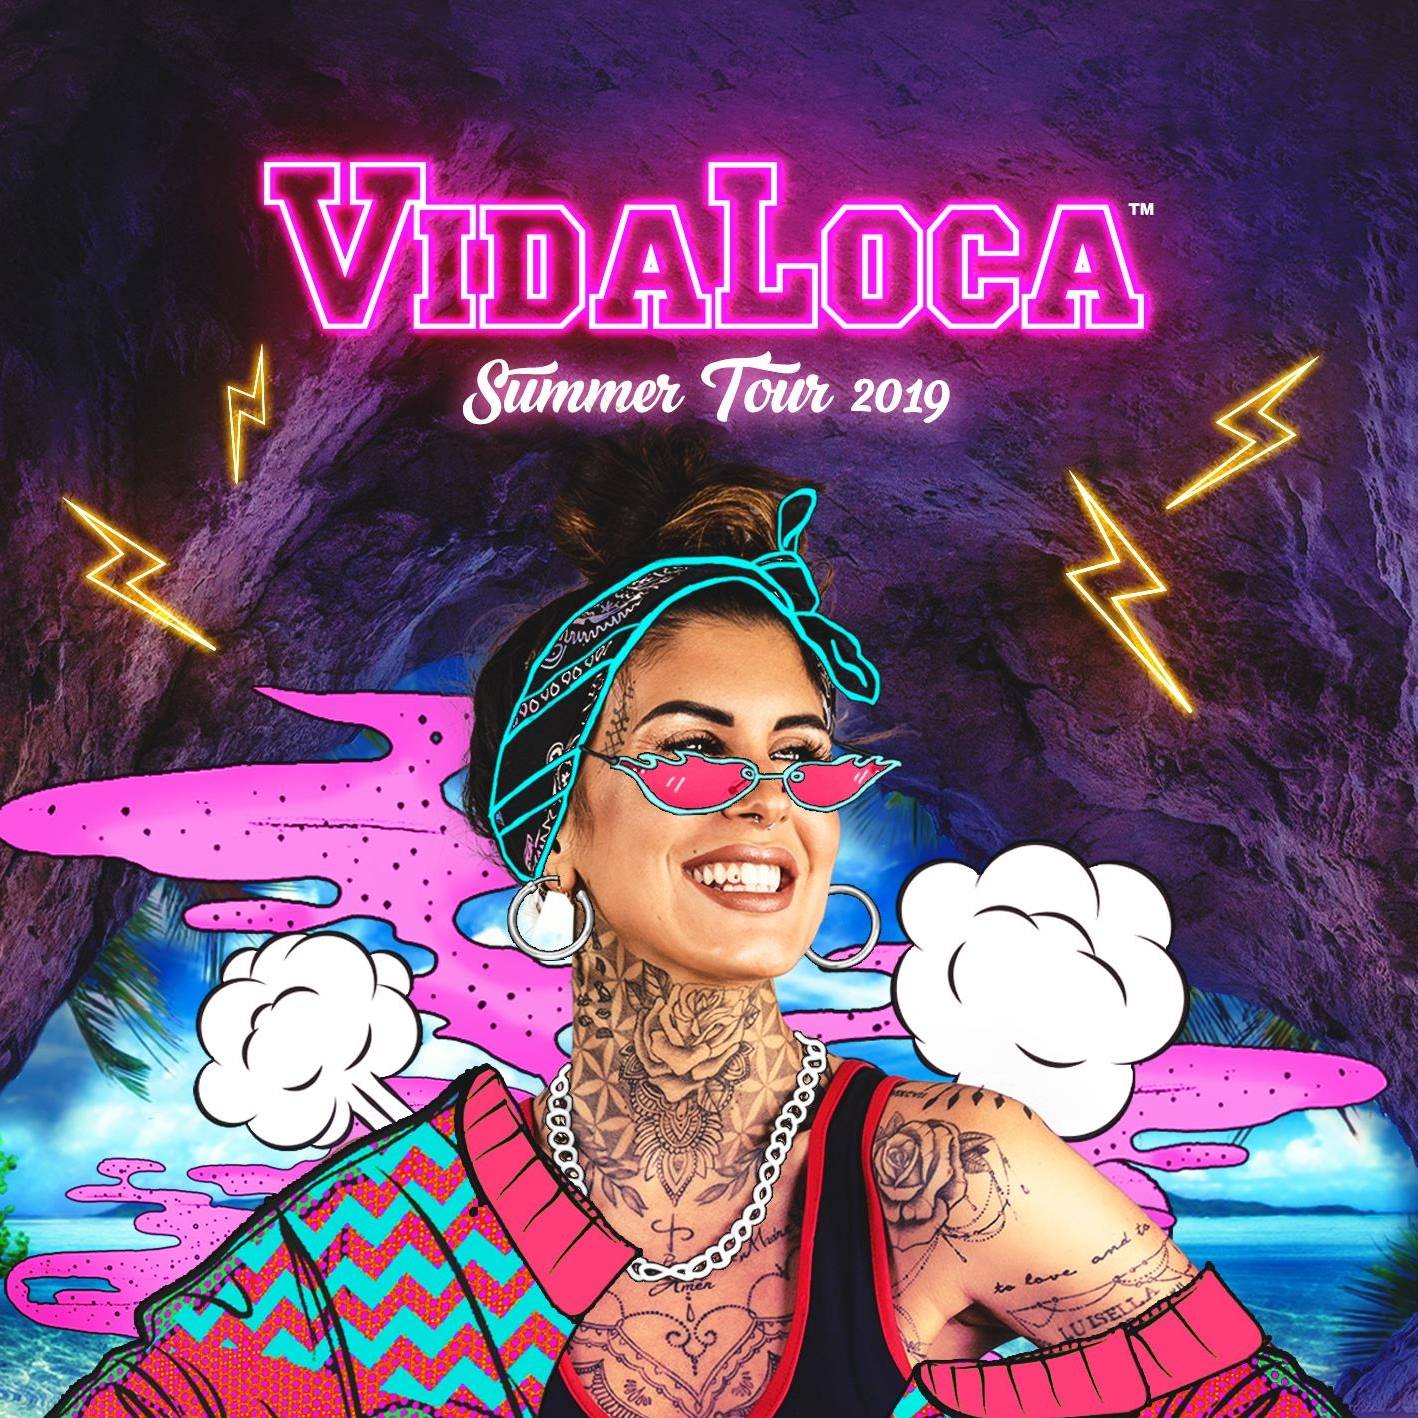 Vida Loca Summer Tour 2019 alla Villa delle Rose